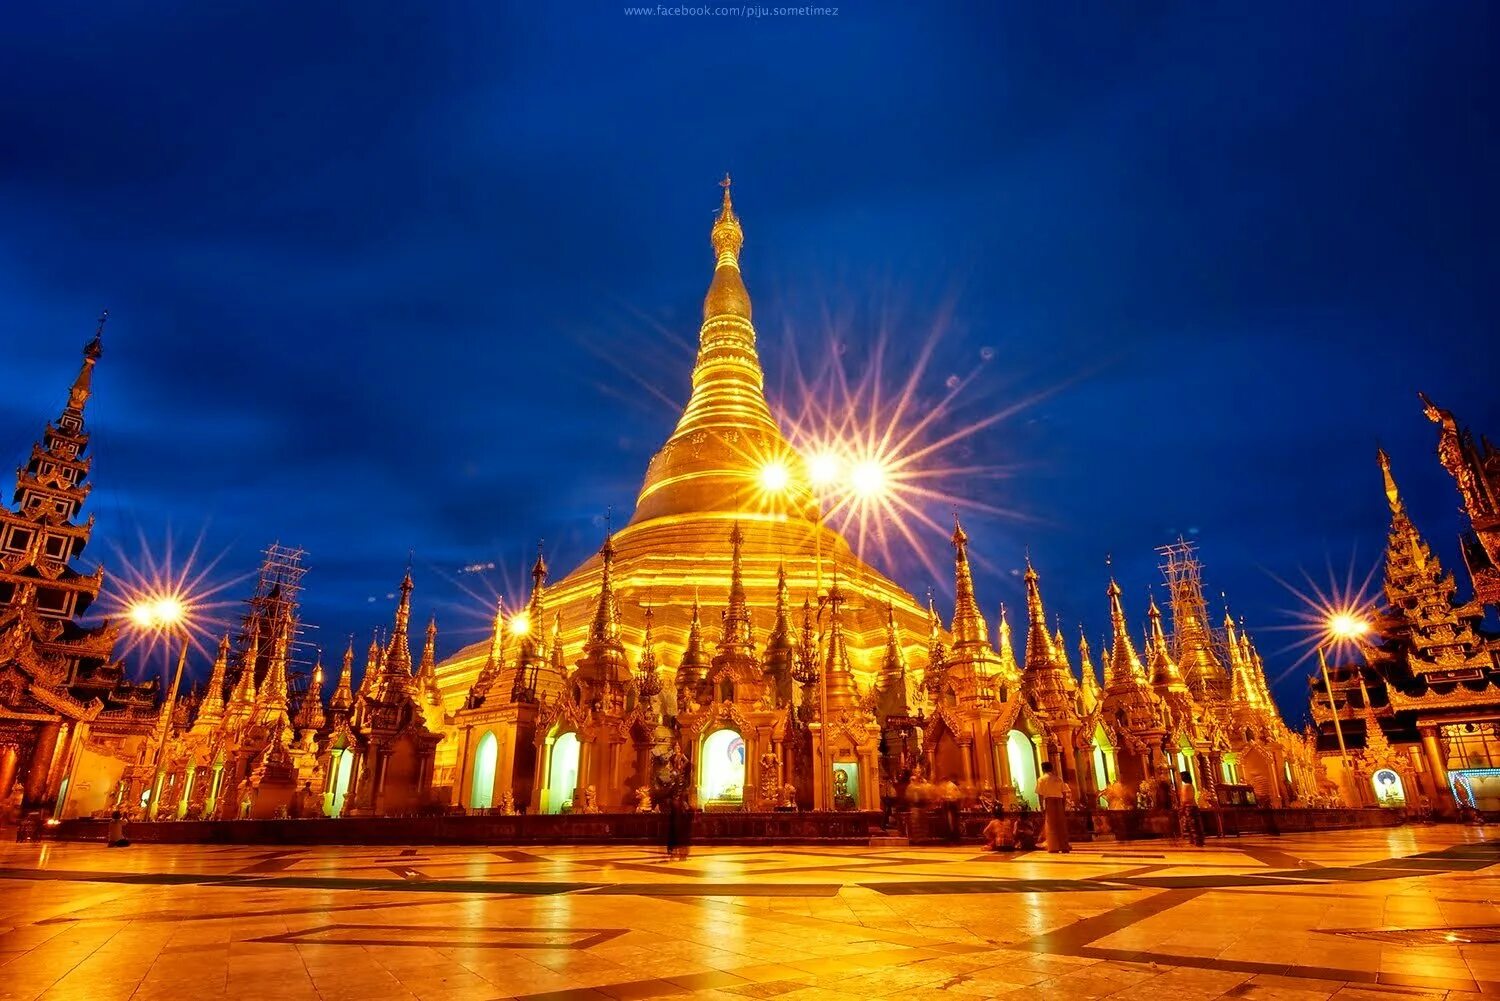 Достопримечательность какой страны является. Шведагон Пайя. Пагода Шведагон. Янгон Мьянма. Пагода Шведагон фото.